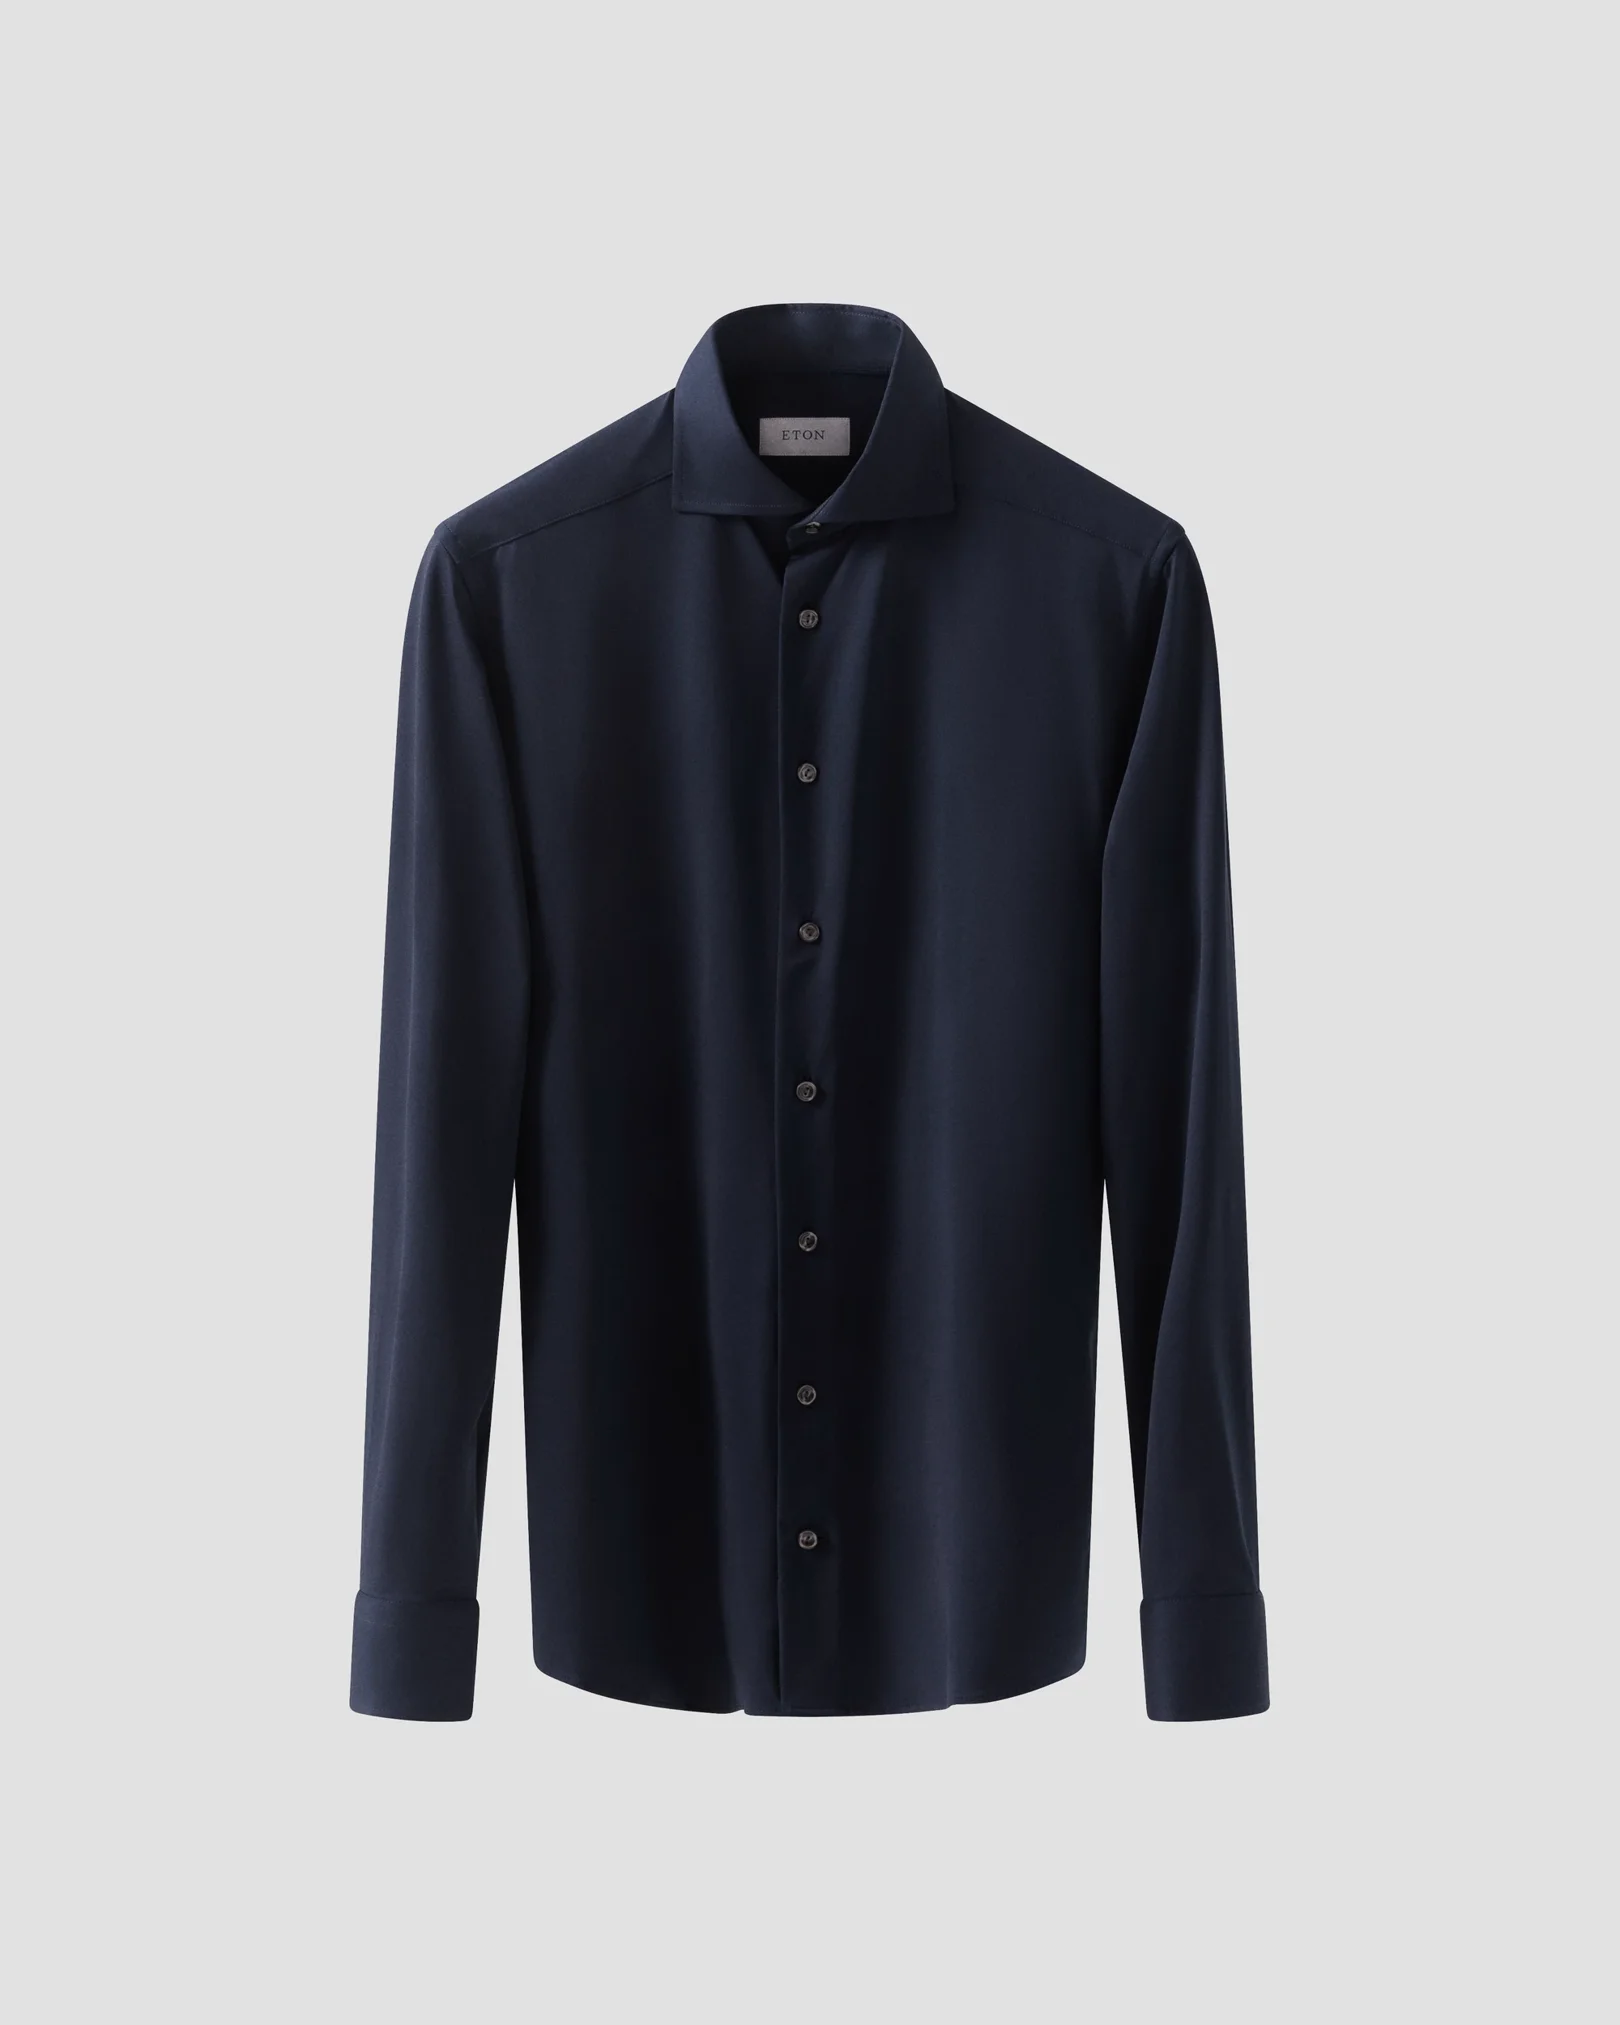 Eton - navy blue 4 way stretch shirt